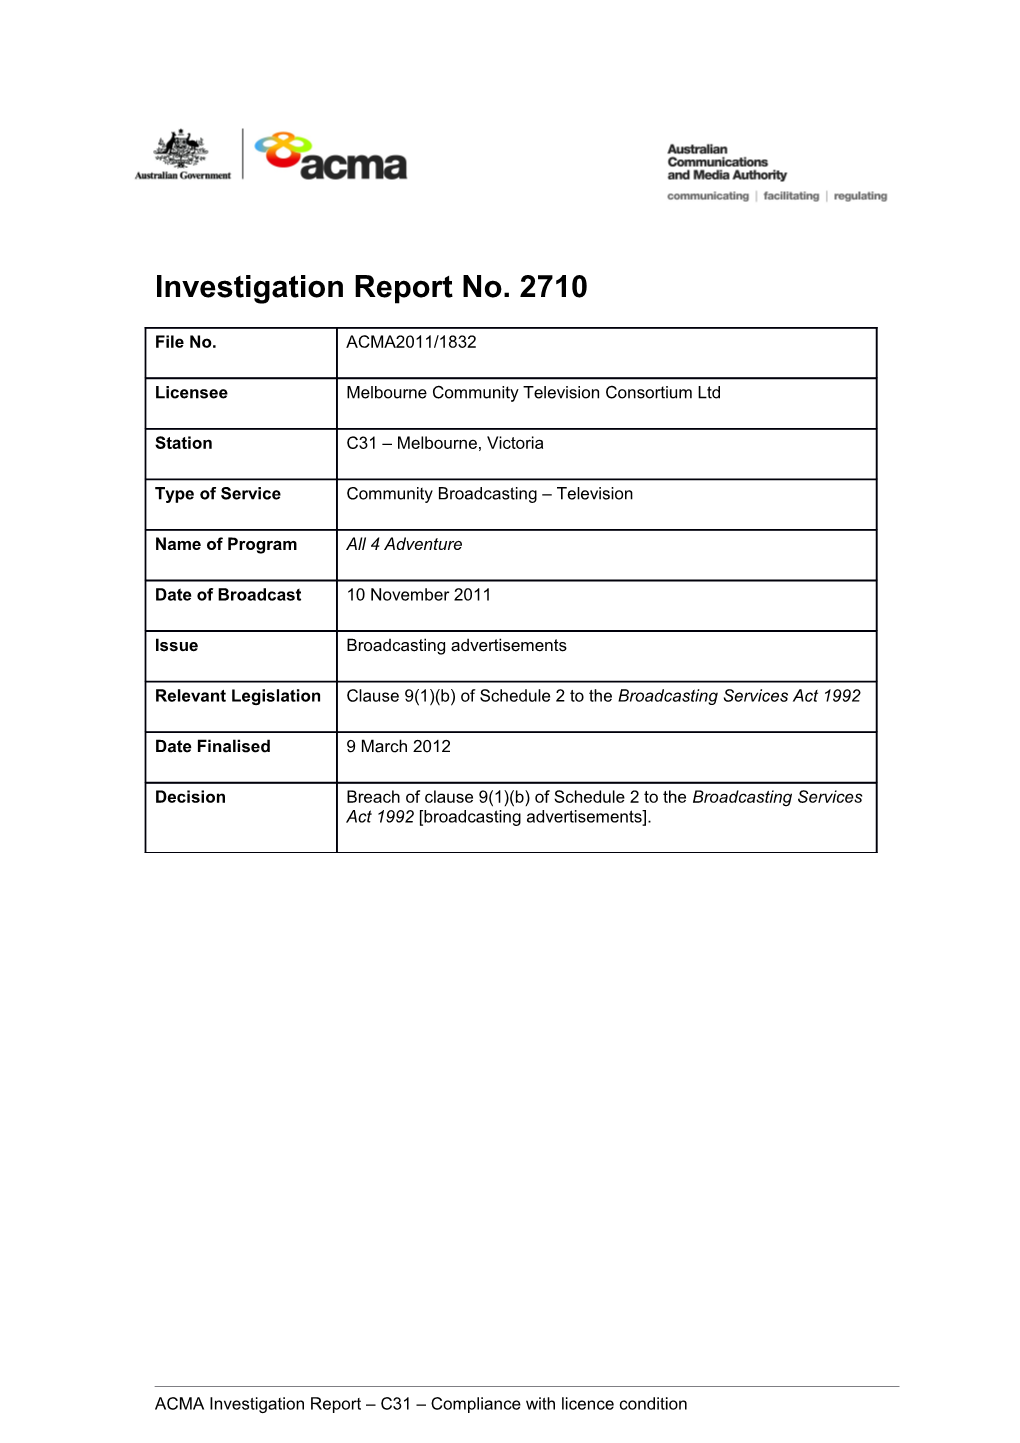 C31 Melbourne - ACMA Investigation Report 2710